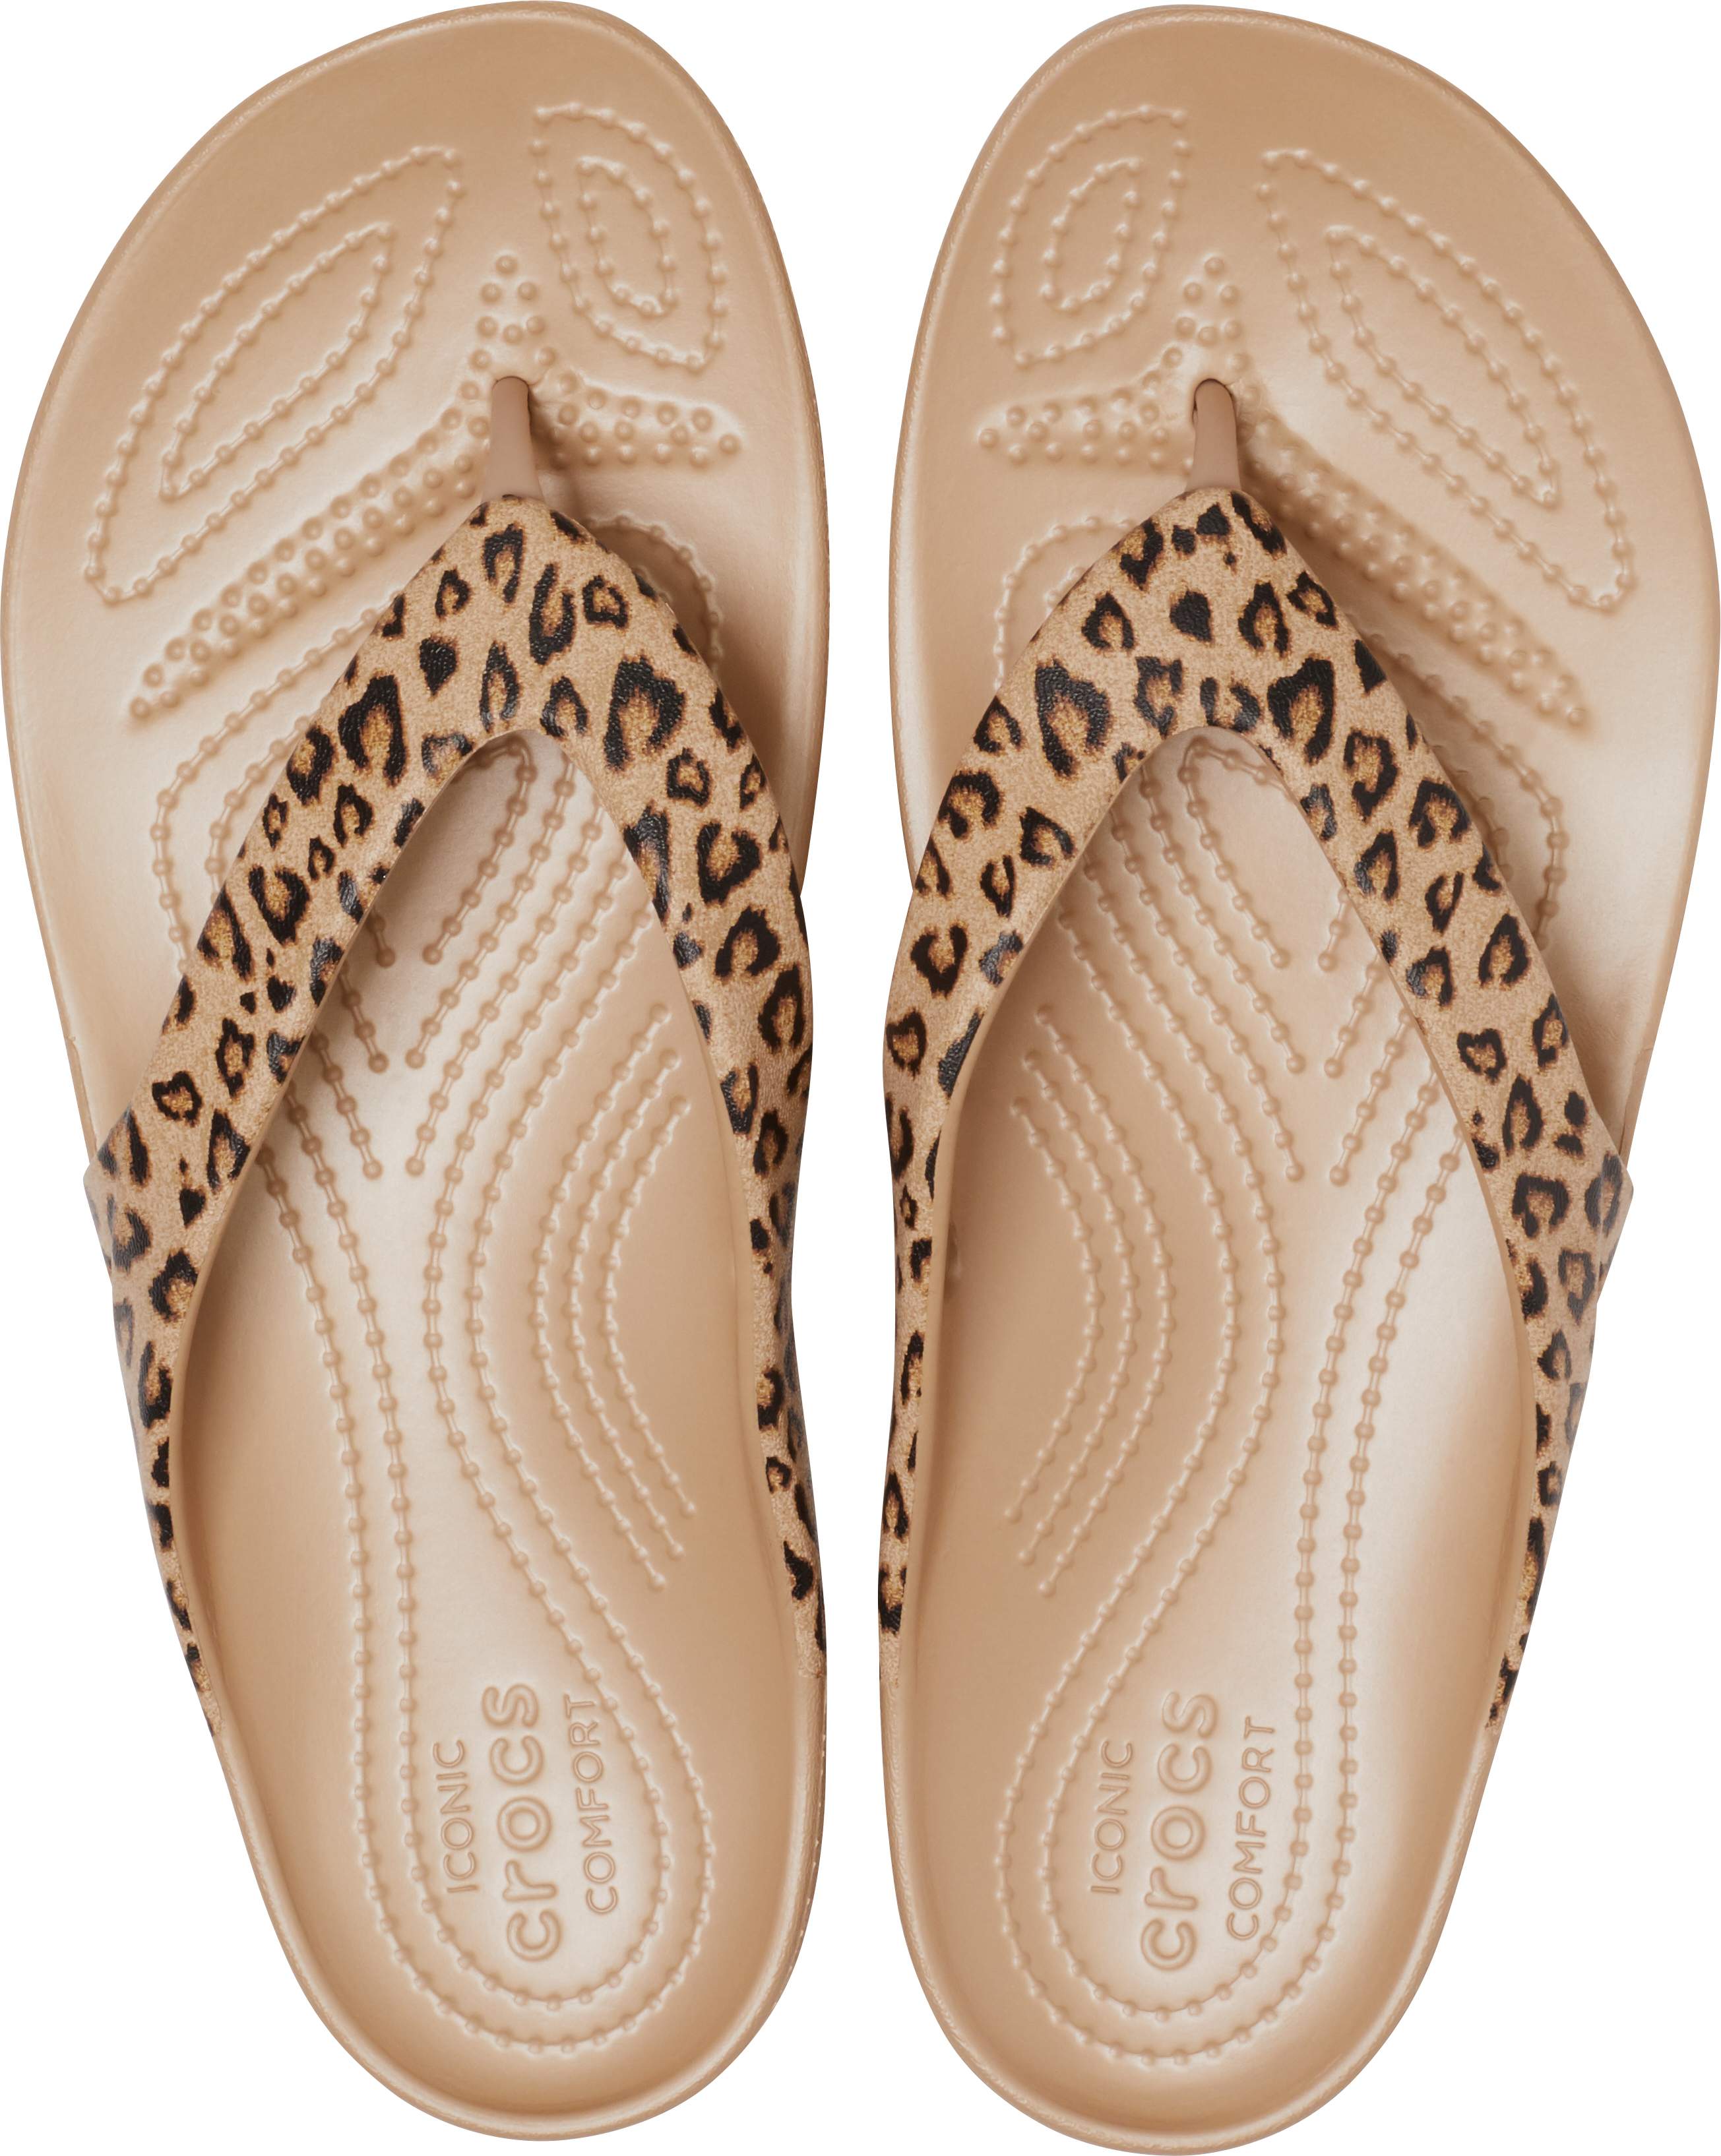 leopard crocs sandals